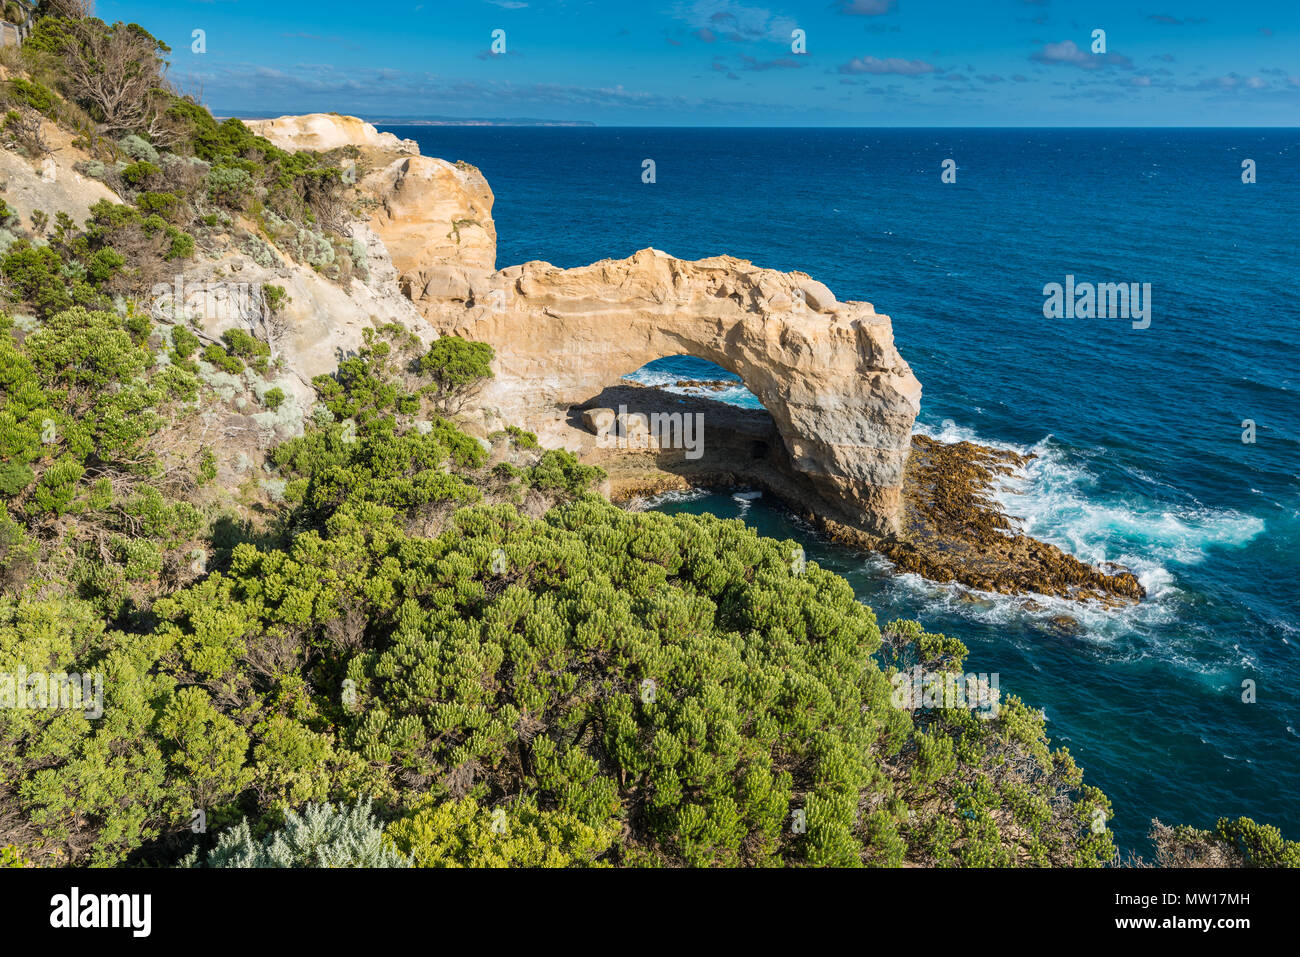 L'Arche, une formation rocheuse calcaire naturel dans le parc national de Port Campbell, Victoria, Australie. Banque D'Images